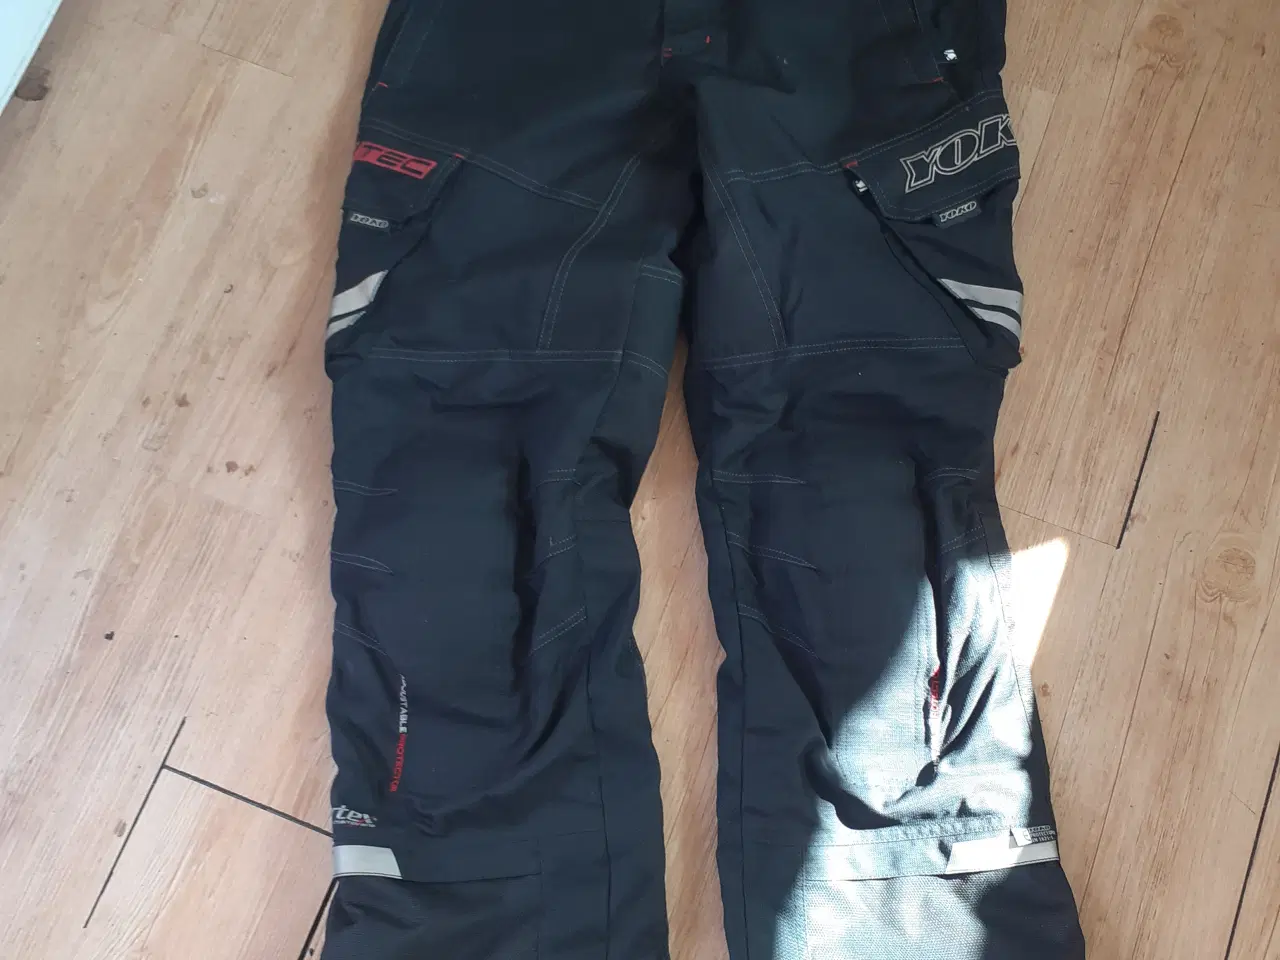 Billede 5 - MC bukser, jakker, støvler mm udstyr til 2 persone